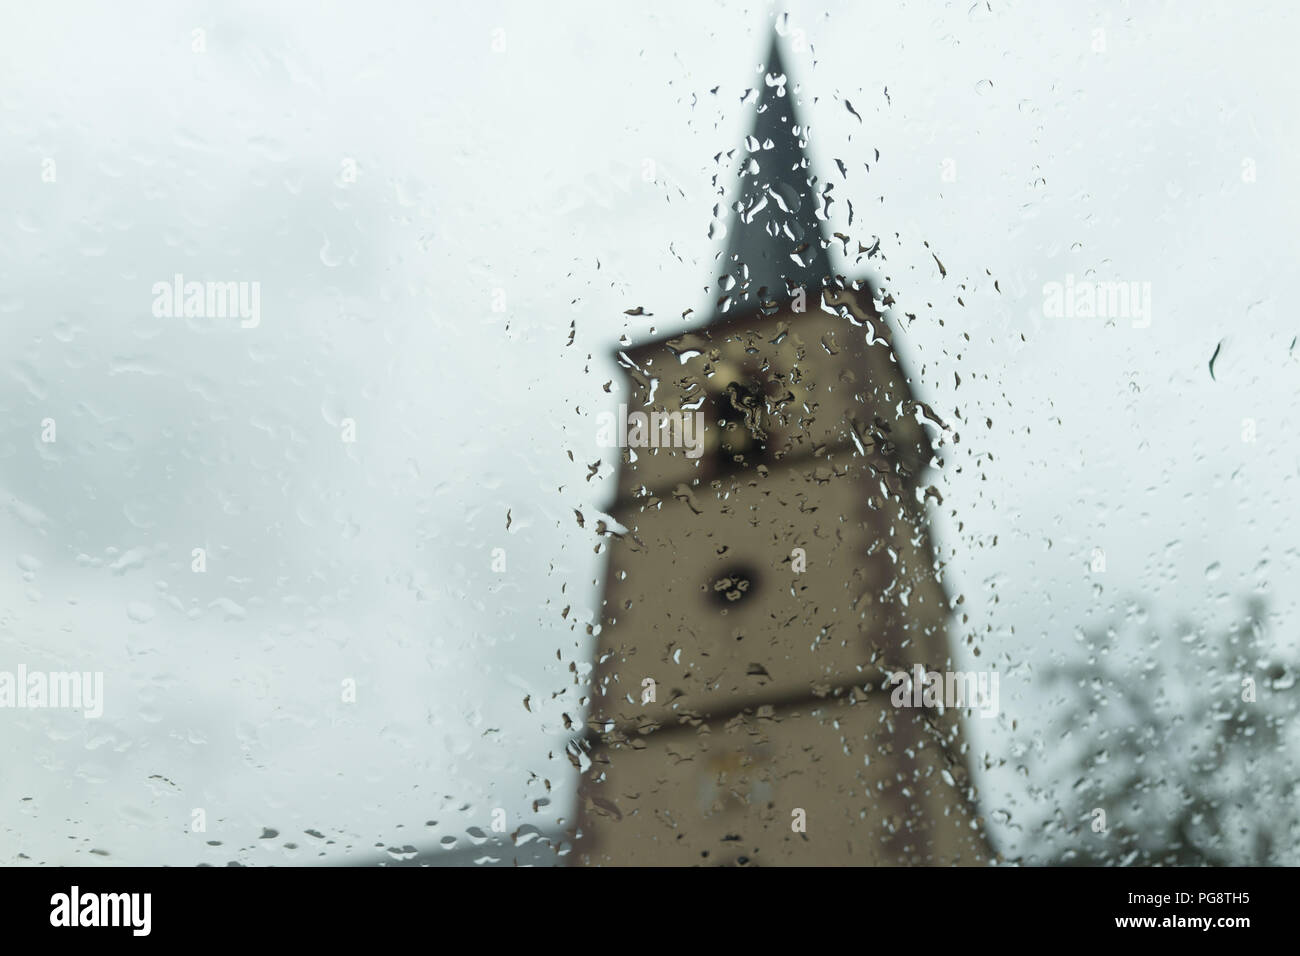 Oberschwarzach Baviera Alemania, Sábado 25 de agosto de 2018 / dramáticos cambios meteorológicos a finales del verano. El seco y caluroso verano europeo se convierte en una fría y lluviosa pre otoño. La torre de la iglesia en el fondo se ve empañada por el inicio de la fría mañana de lluvia. Crédito: Ingo Menhard/Alamy Live News Foto de stock